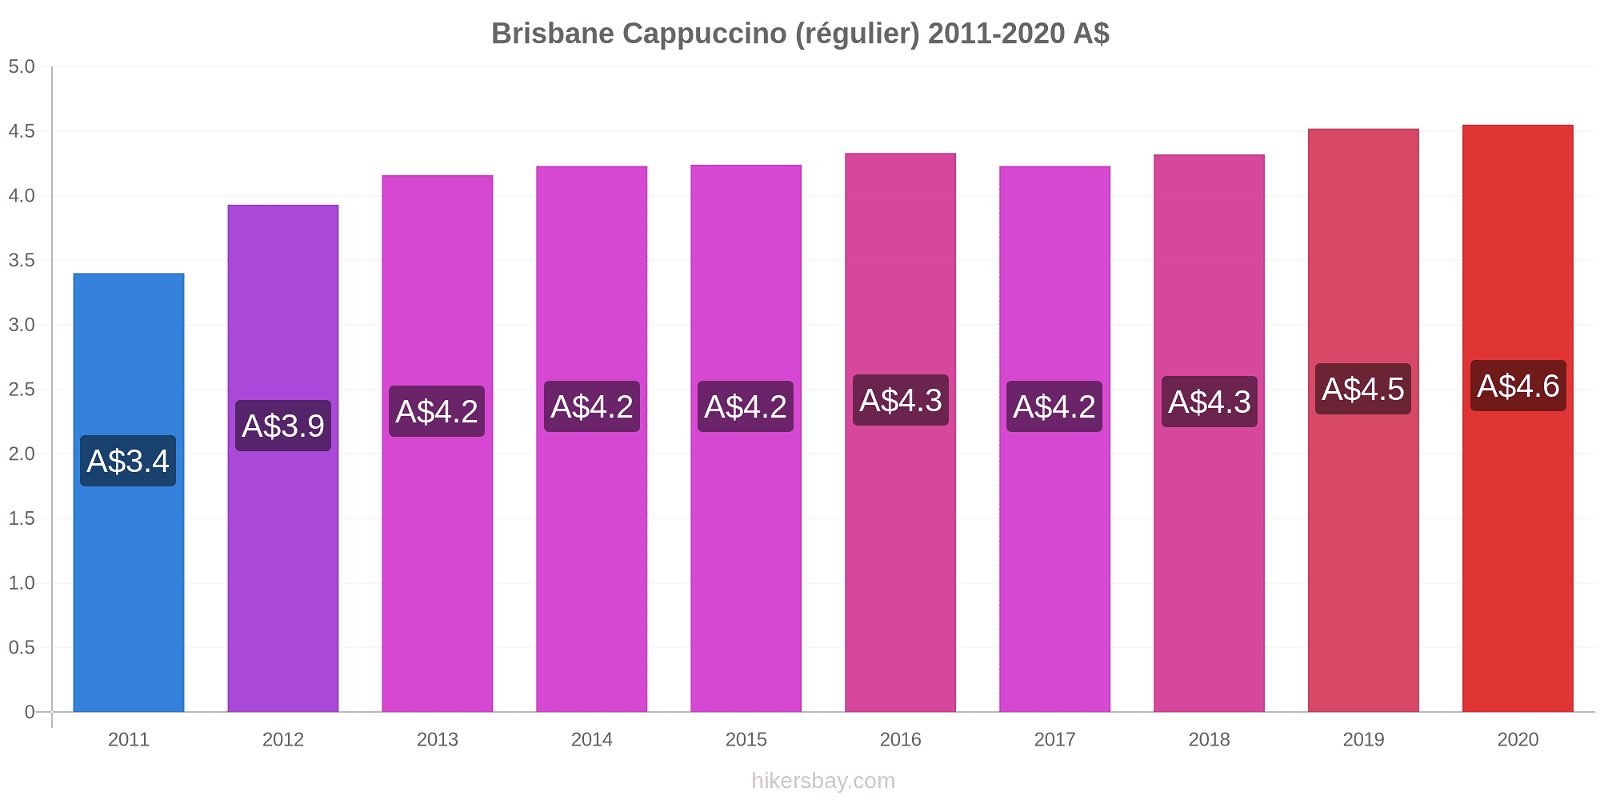 Brisbane changements de prix Cappuccino (régulier) hikersbay.com